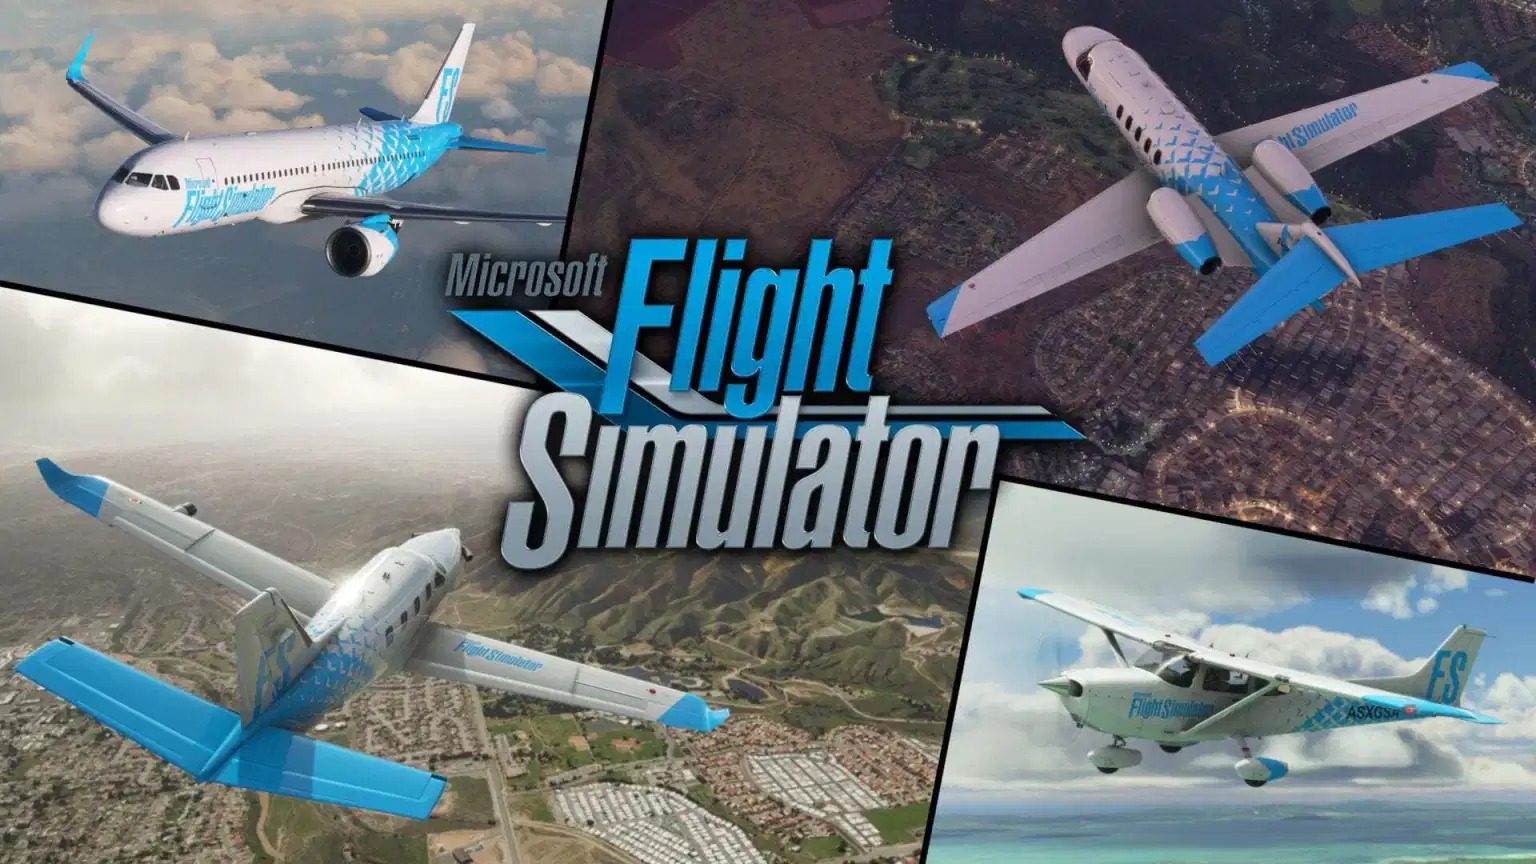 微软飞行模拟》现已上市今后将持续更新游戏内容梦电游戏nd15.com